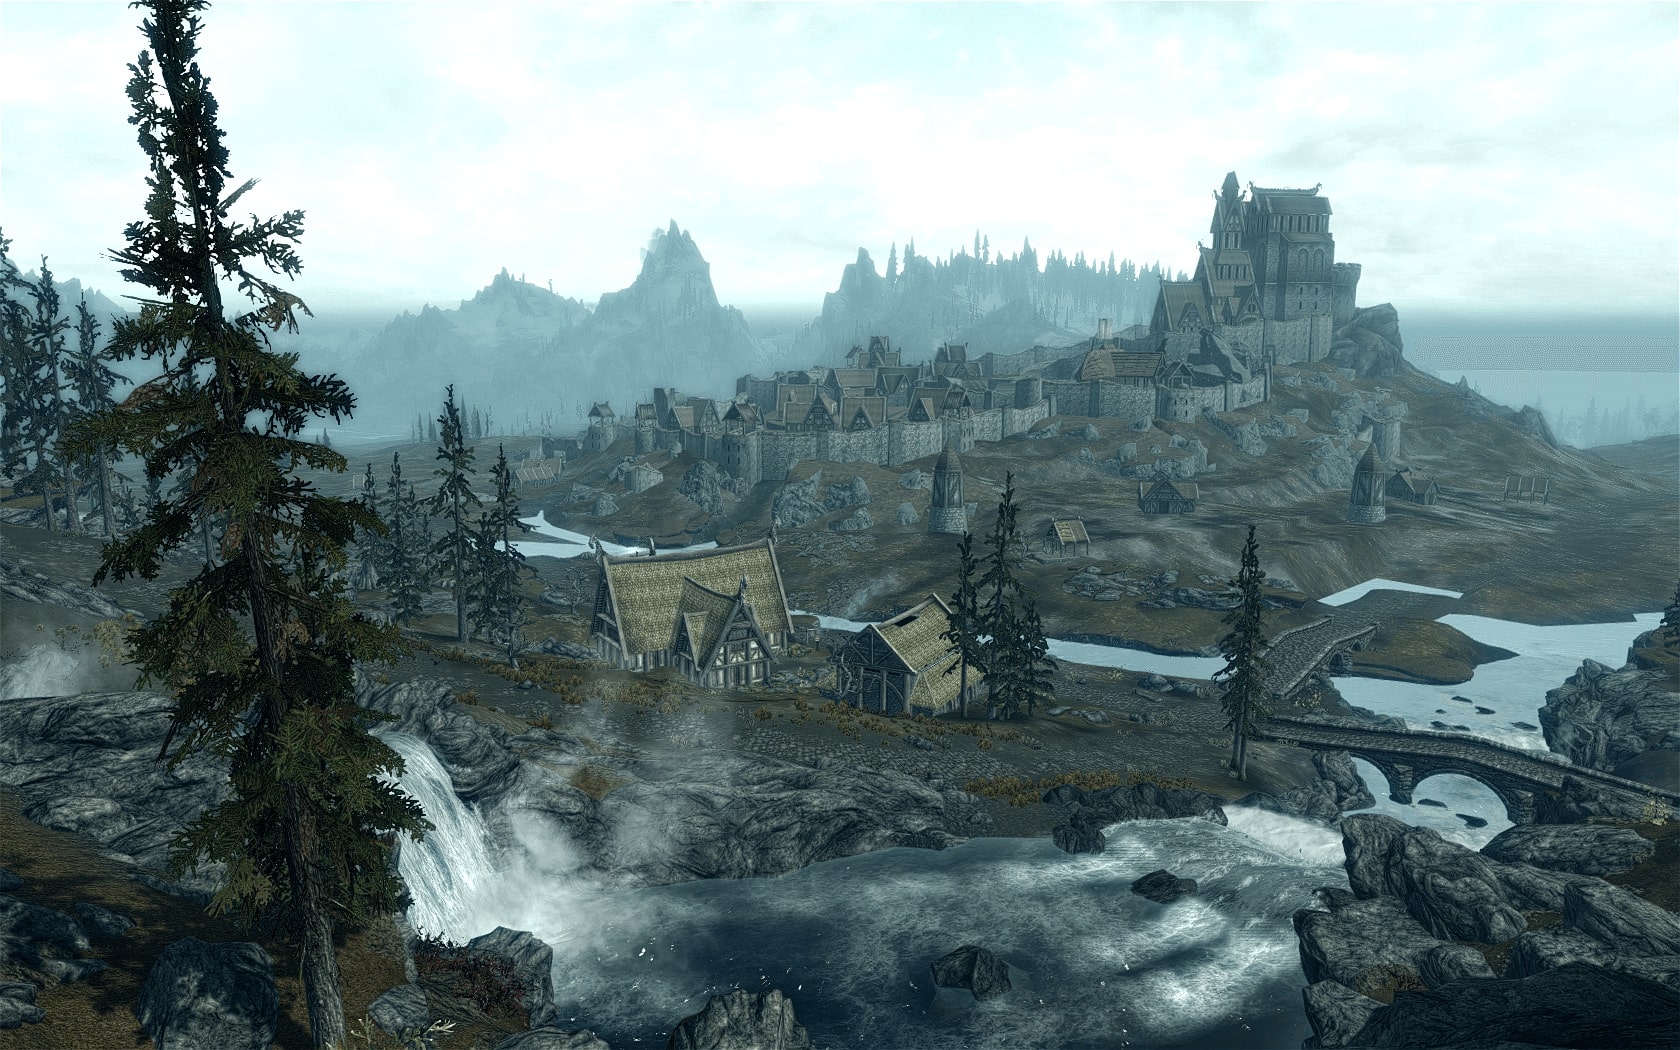 Мир The Elder Scrolls: Skyrim наполнен множеством точек интереса — если просто идти в сторону ближайшей башни-ориентира, можно наткнуться на что-нибудь занимательное